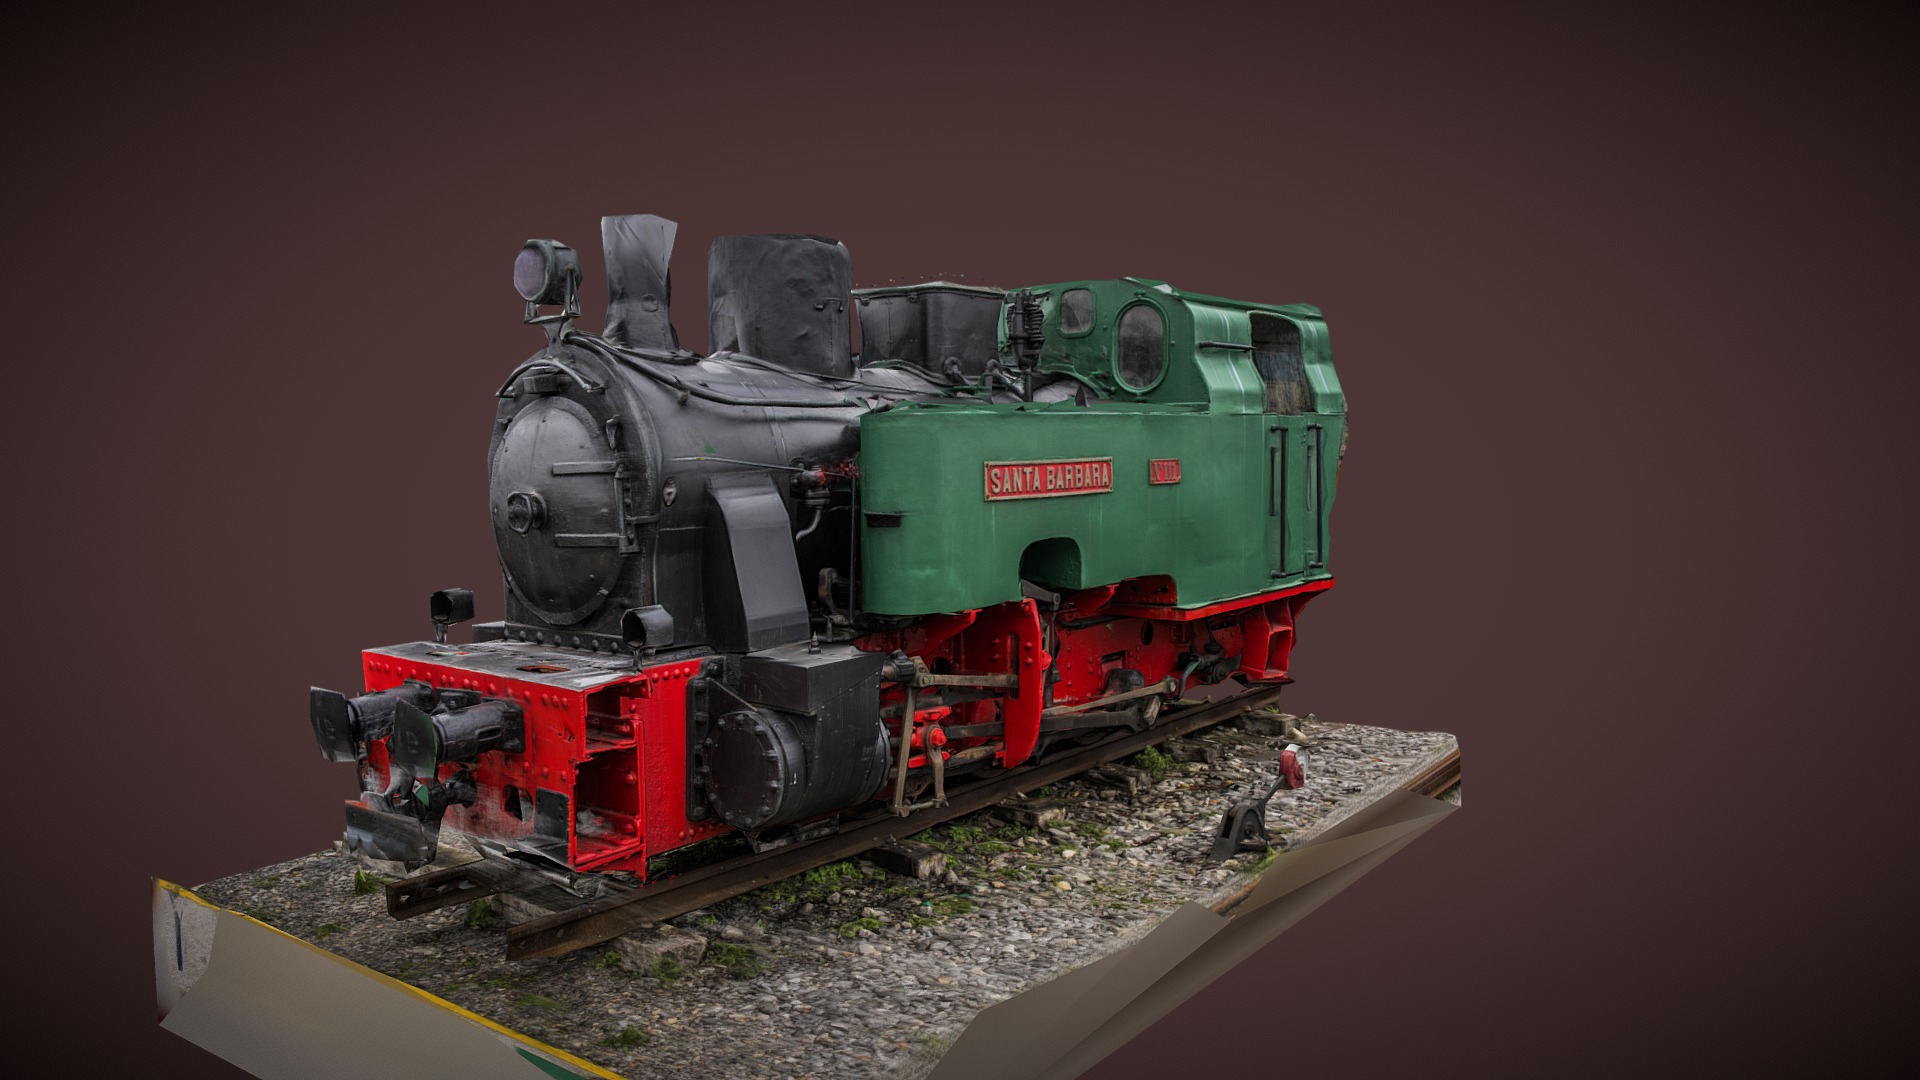 3D model Locomotive Santa Barbara photogrammetry scan - This is a 3D model of the Locomotive Santa Barbara photogrammetry scan. The 3D model is about a toy train on a track.